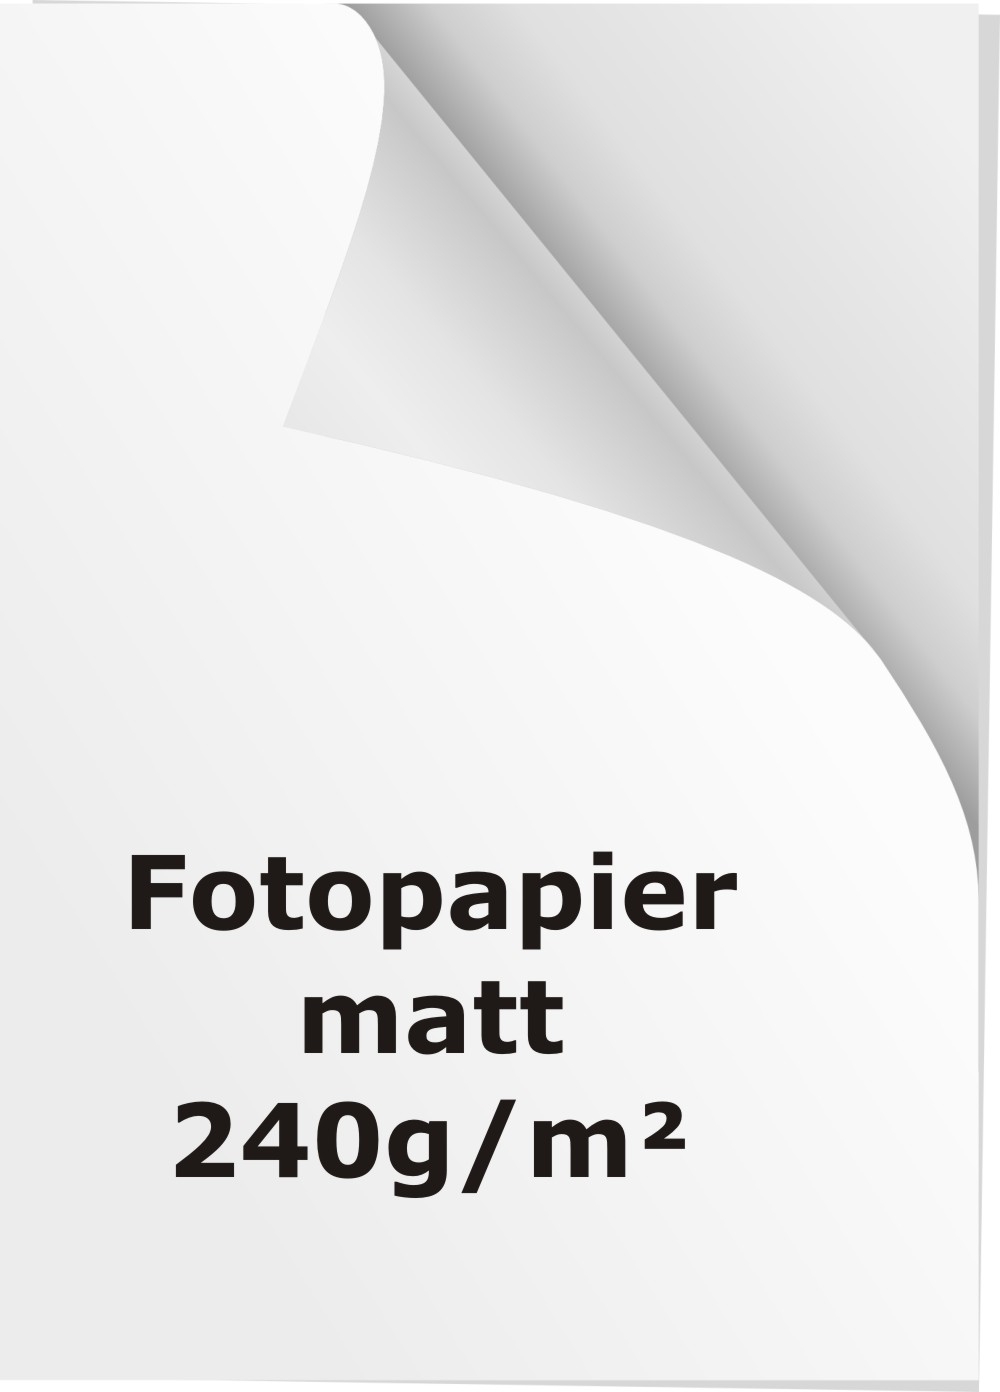 Accumulatie Betrokken Gestaag Fotopapier / Fotokarton - 240g - matt - 10 Stück